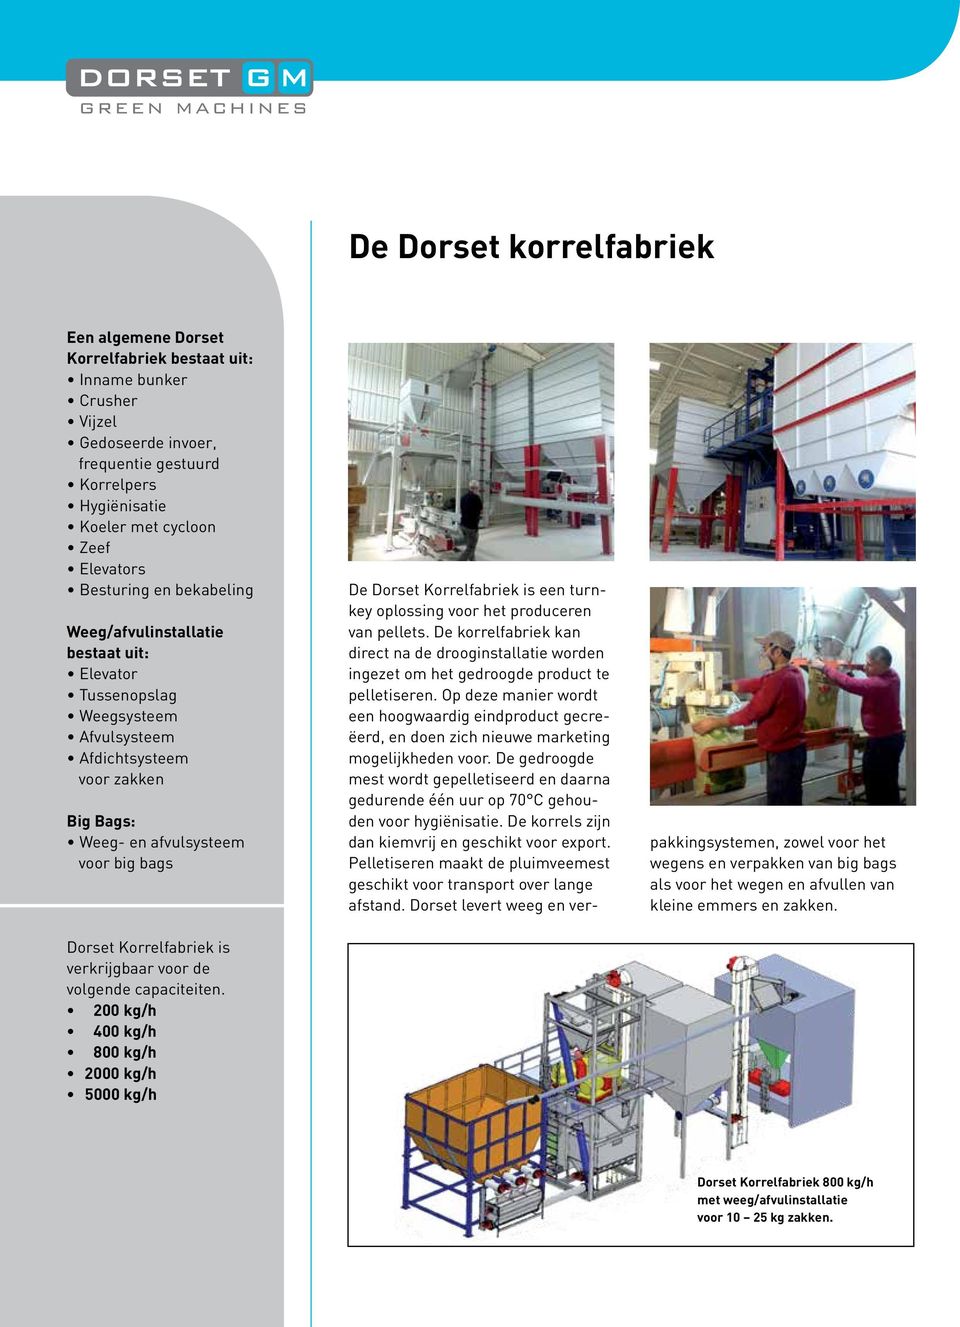 is verkrijgbaar voor de volgende capaciteiten. 200 kg/h 400 kg/h 800 kg/h 2000 kg/h 5000 kg/h De Dorset Korrelfabriek is een turnkey oplossing voor het produceren van pellets.